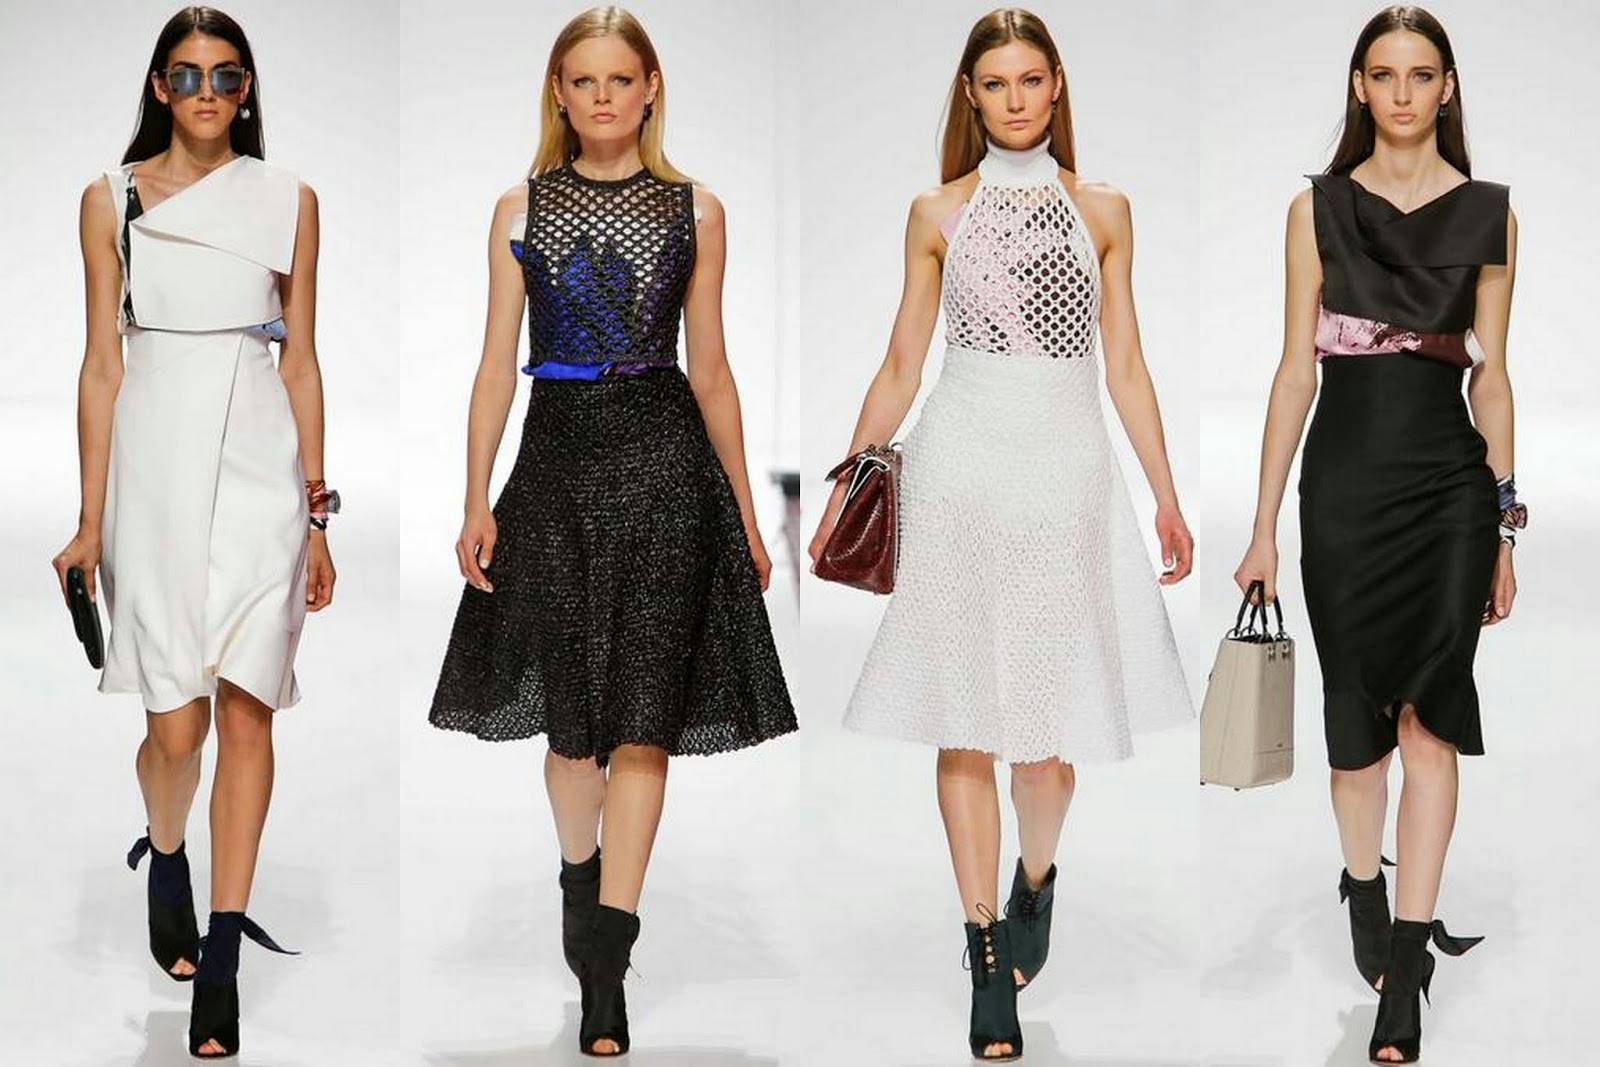 I AM FASHION !!!: Christian Dior Resort 2015 Womenswear